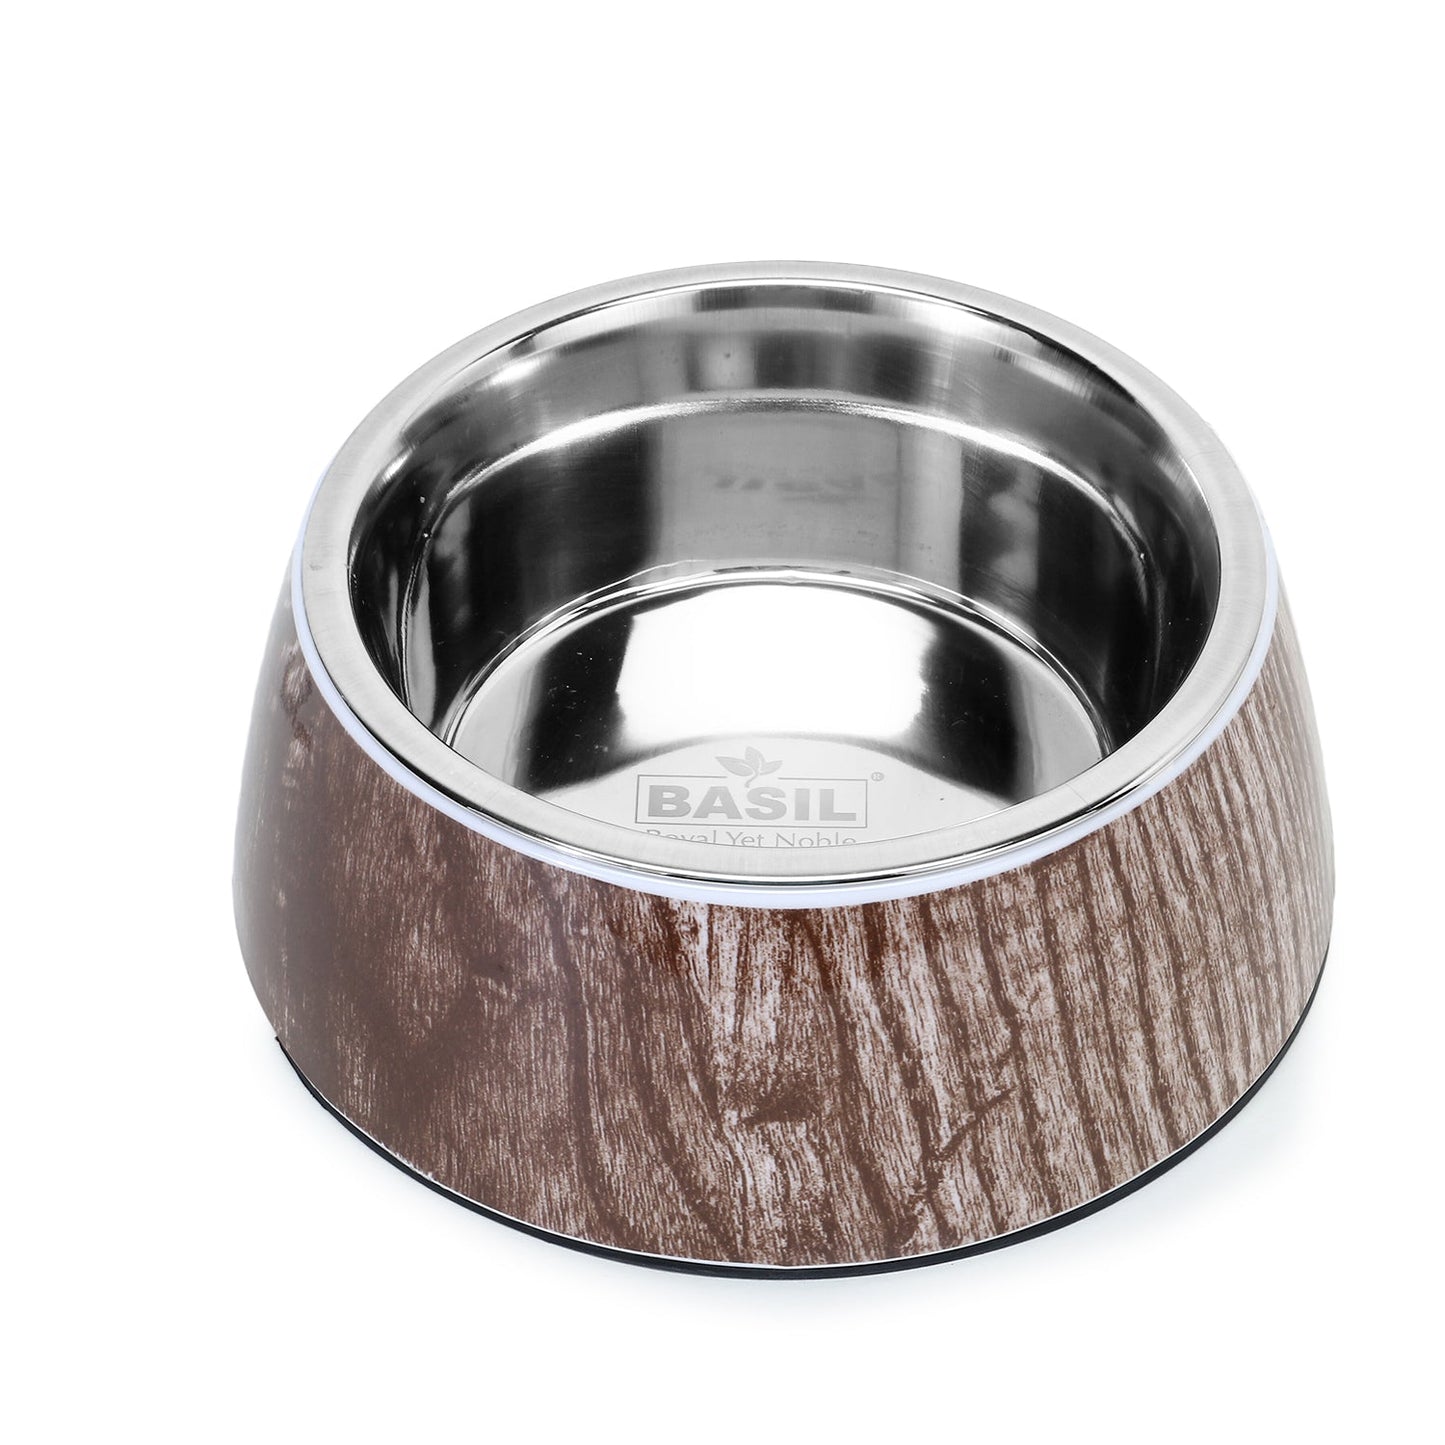 Basil Wooden Print Pet Feeding Bowl, Stainless Steel & Melamine